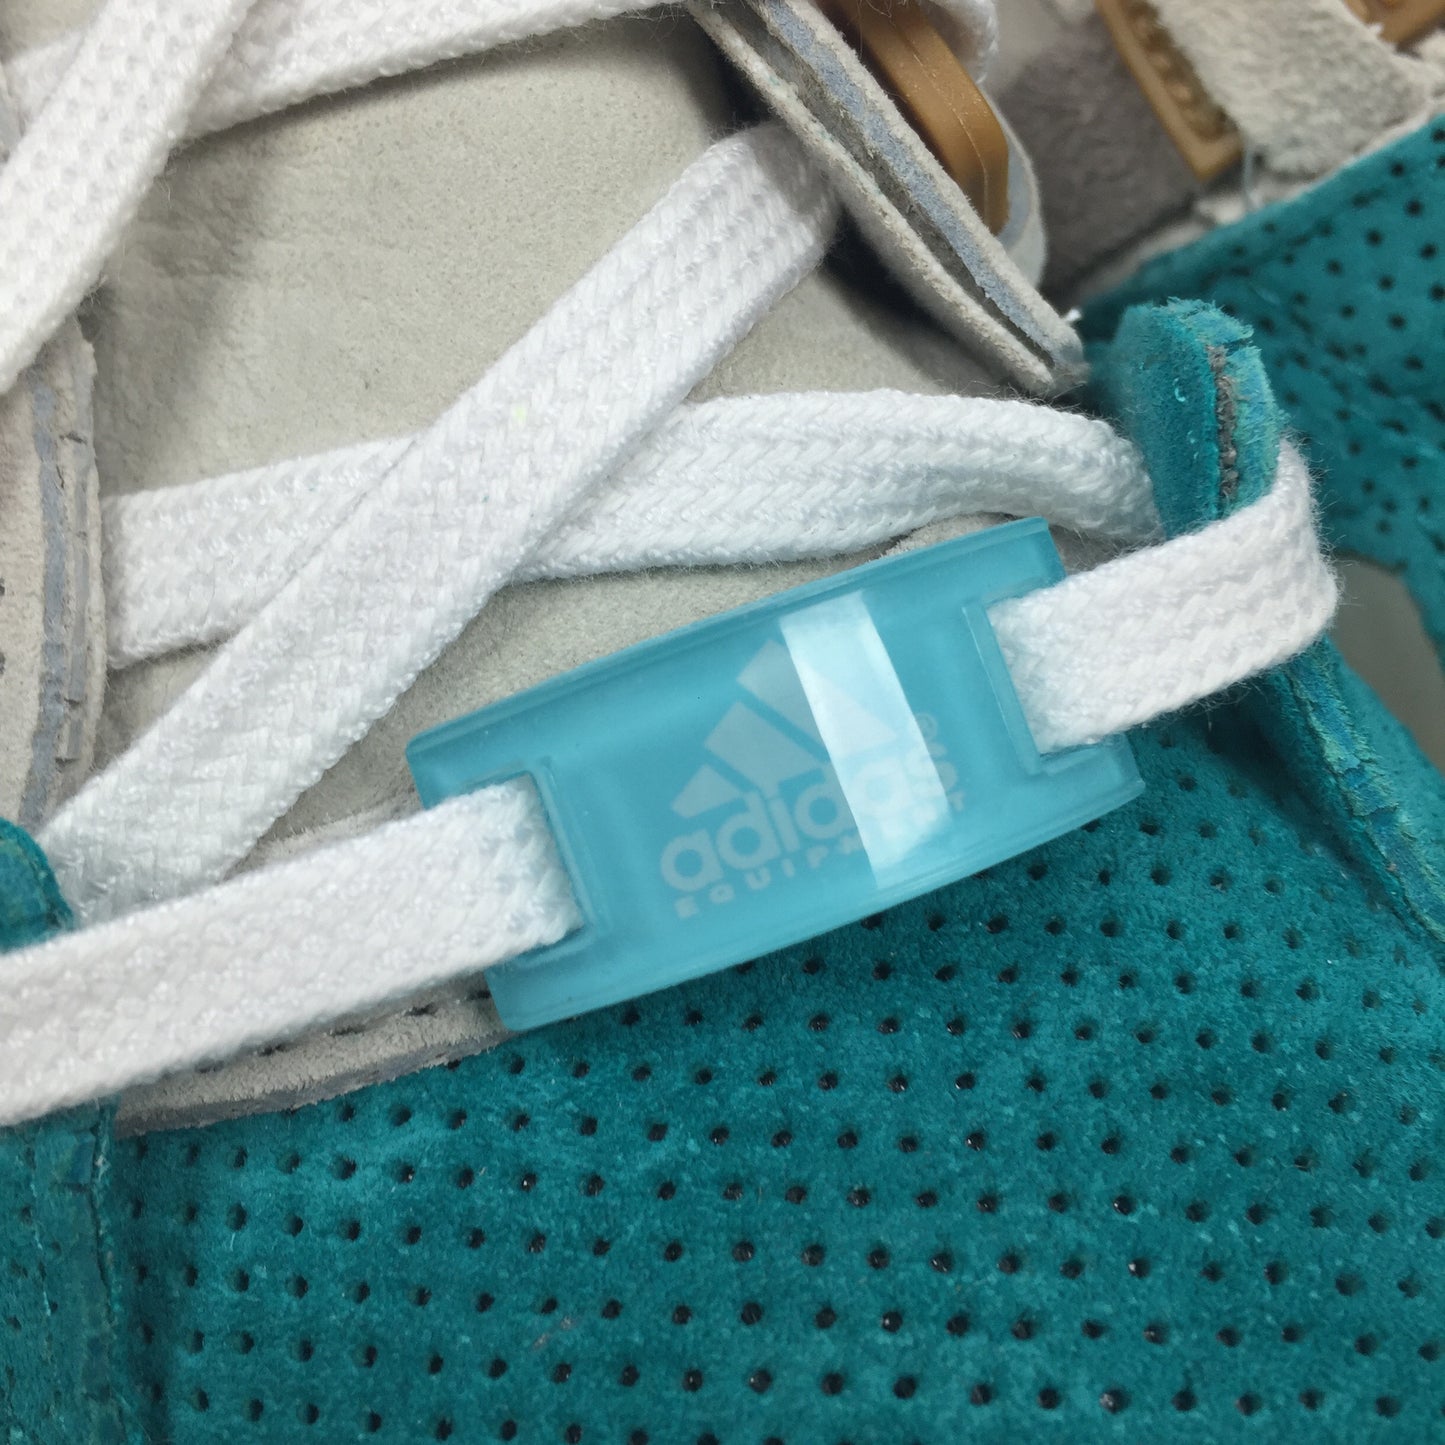 Adidas Consortium - EQT Running Guidance Turquoise